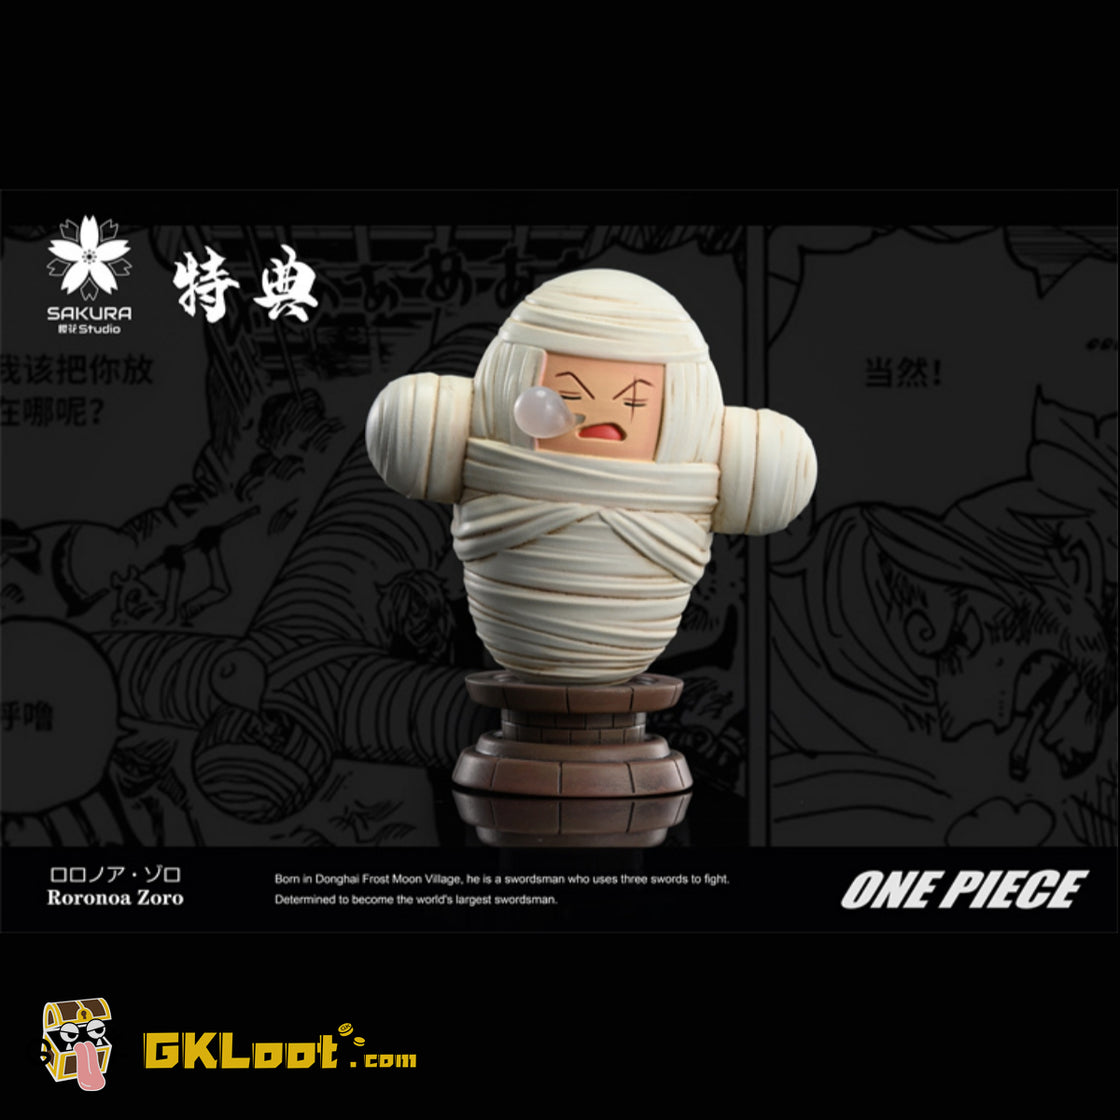 [Out of stock] Sakura Studio One Piece Baby Tony Tony Chopper & Bandage Roronoa Zoro Statue